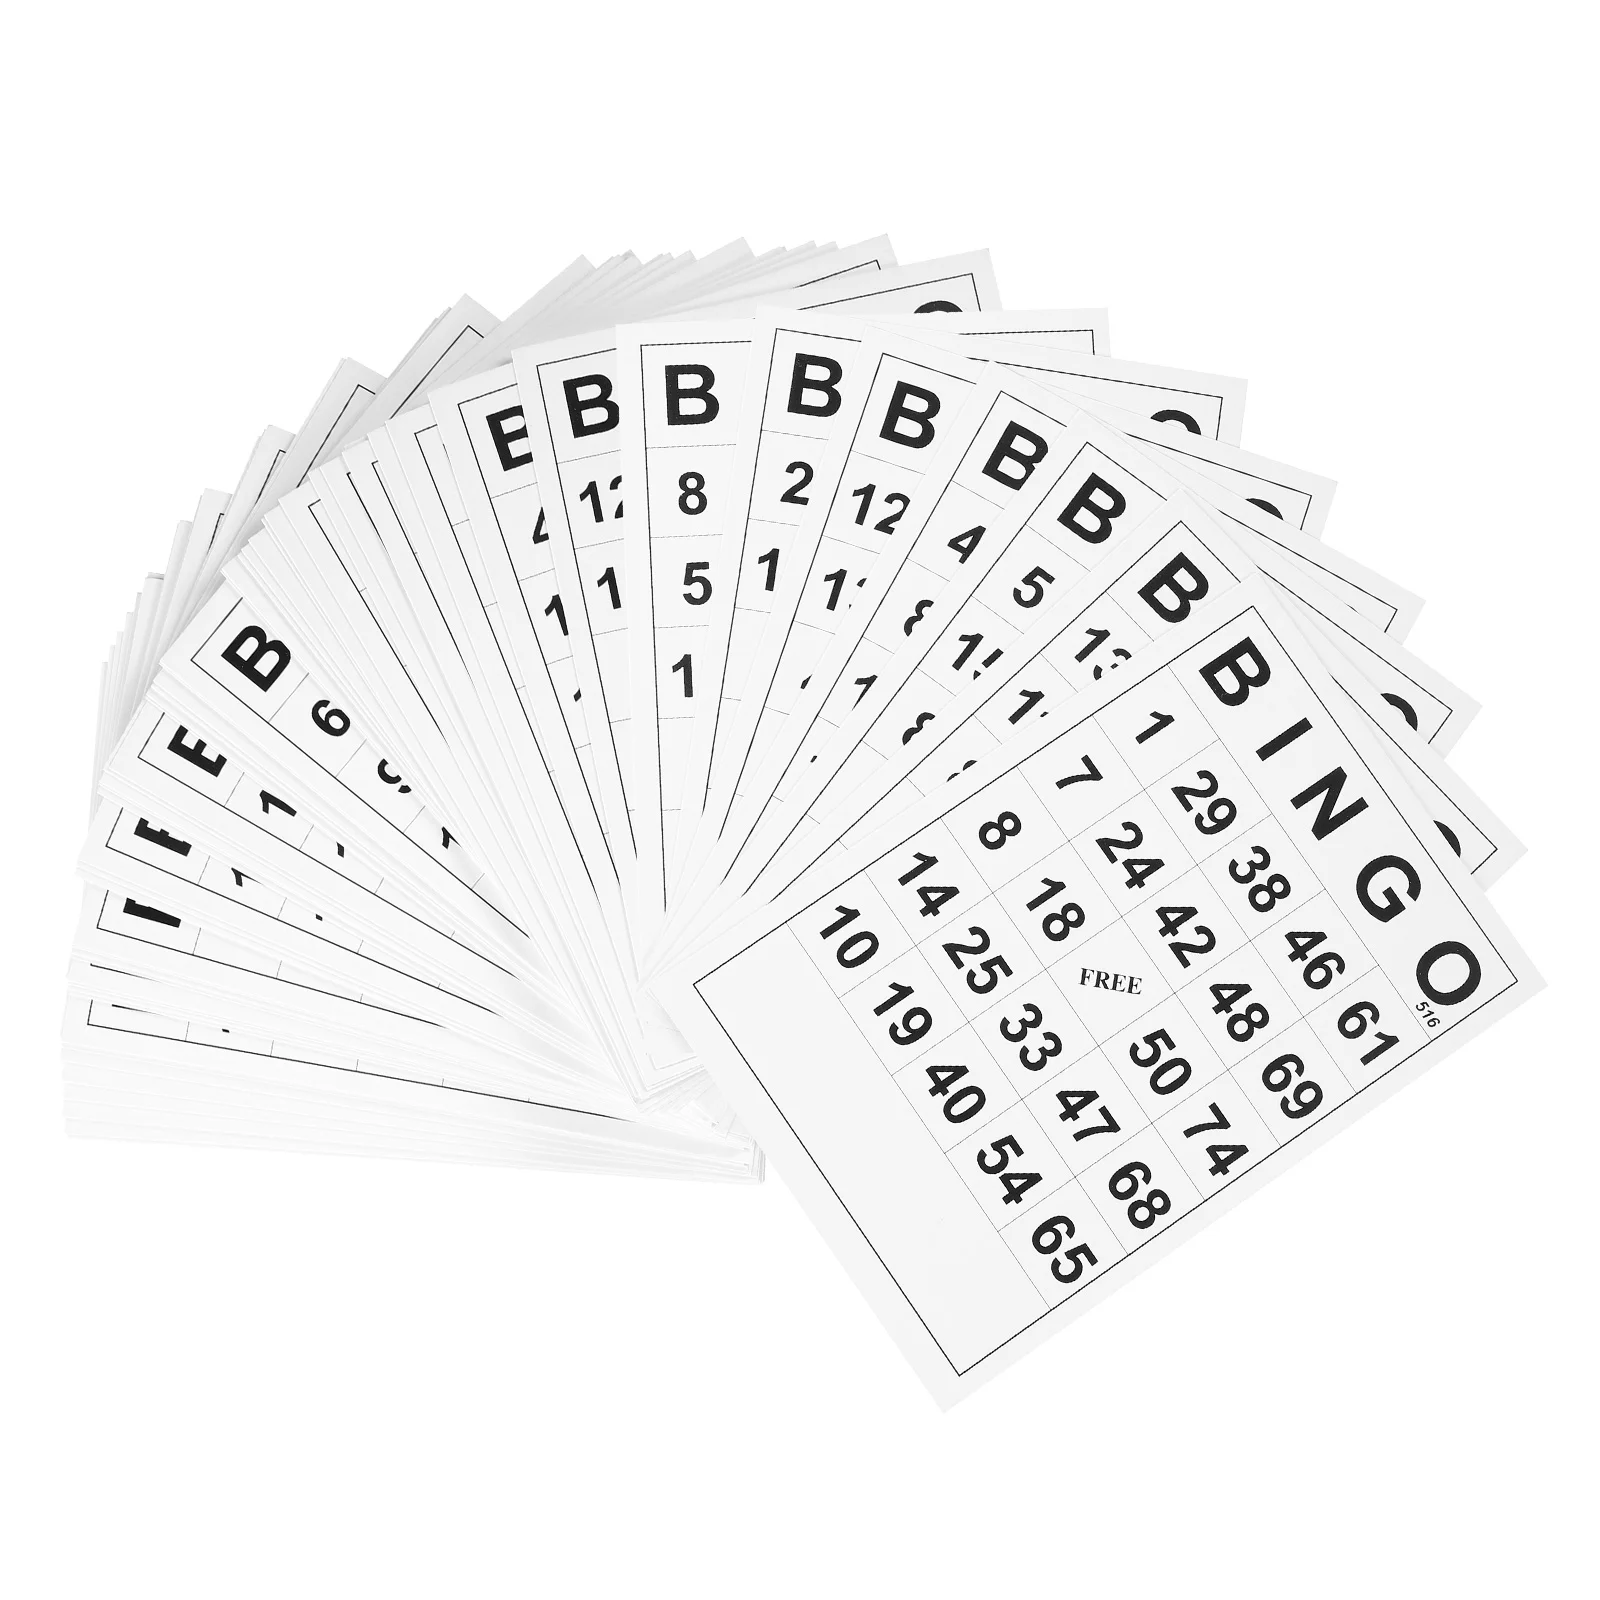 

Nativity Accessories Kids Bingo Book Accessories Large Bingo Cards Bingo Game Cards Bingo Paper Fun Not Repeating